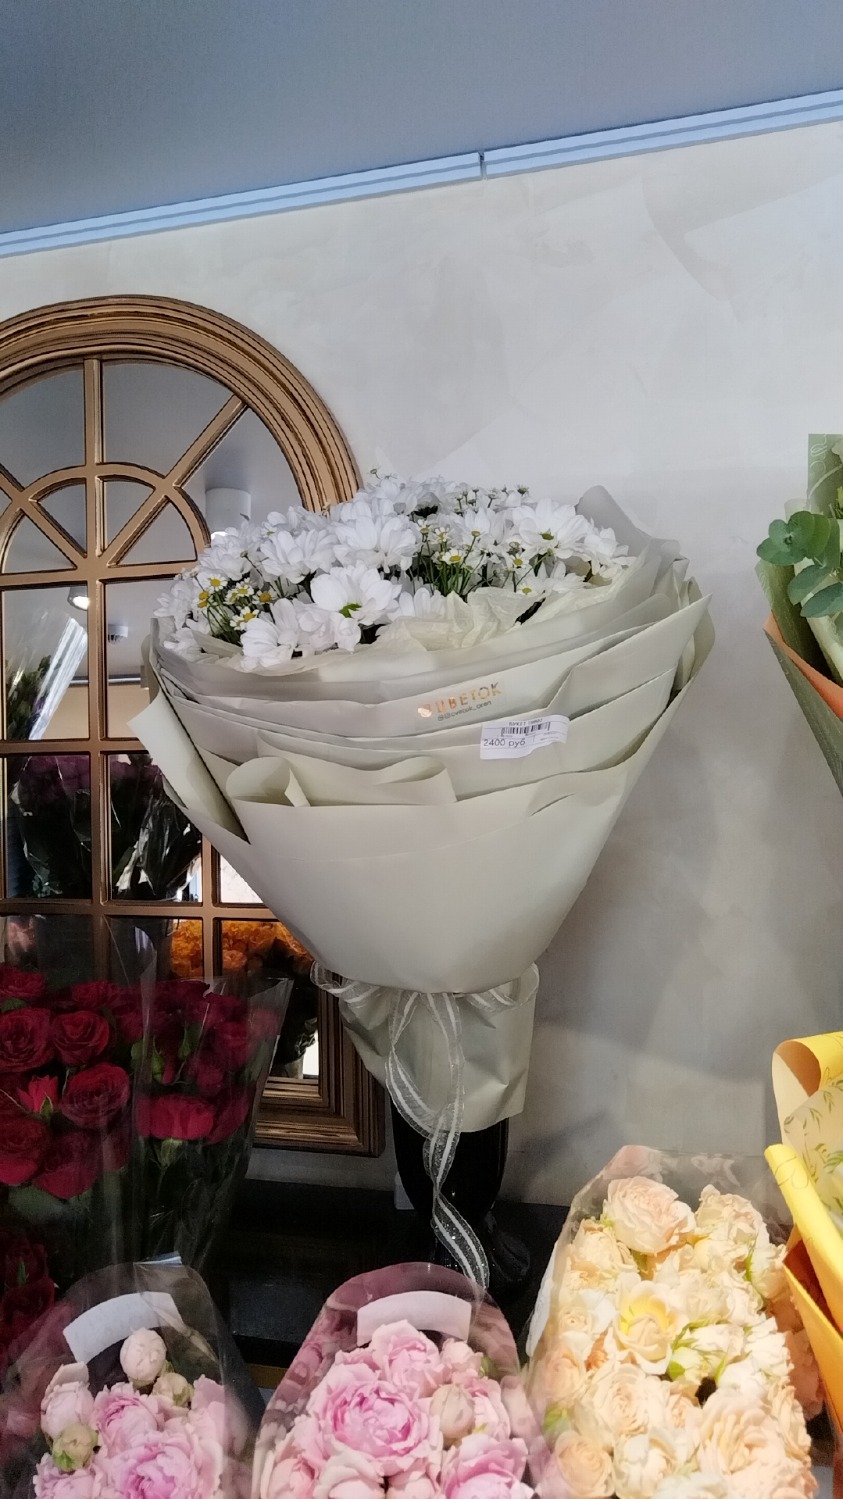 В цветочных магазинах можно купить цветы за 1200-2500 рублей